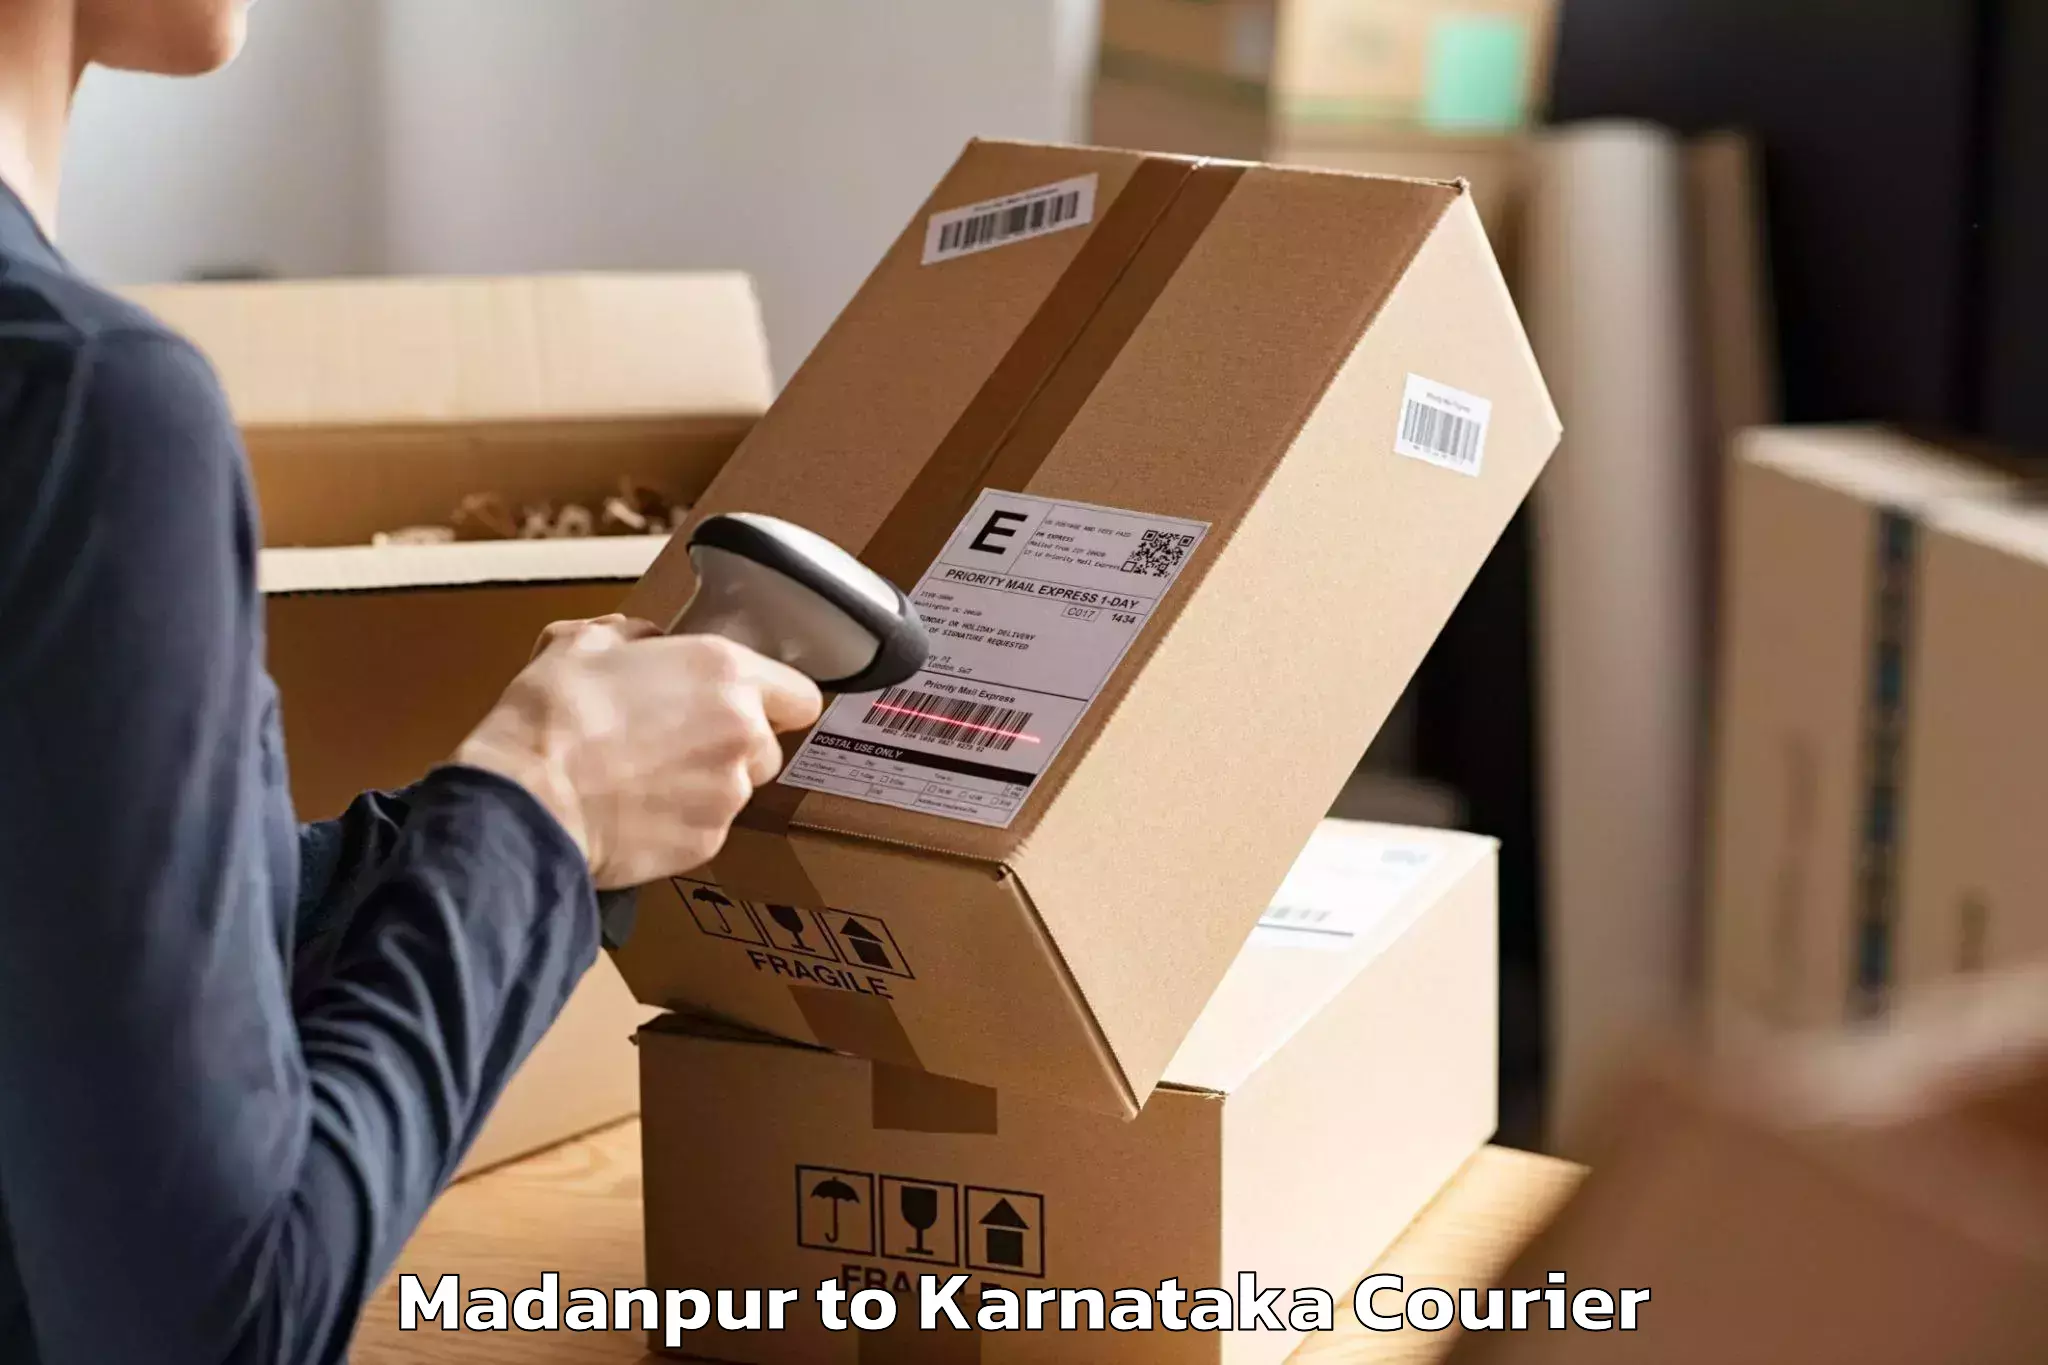 Efficient moving company Madanpur to Yenepoya Mangalore